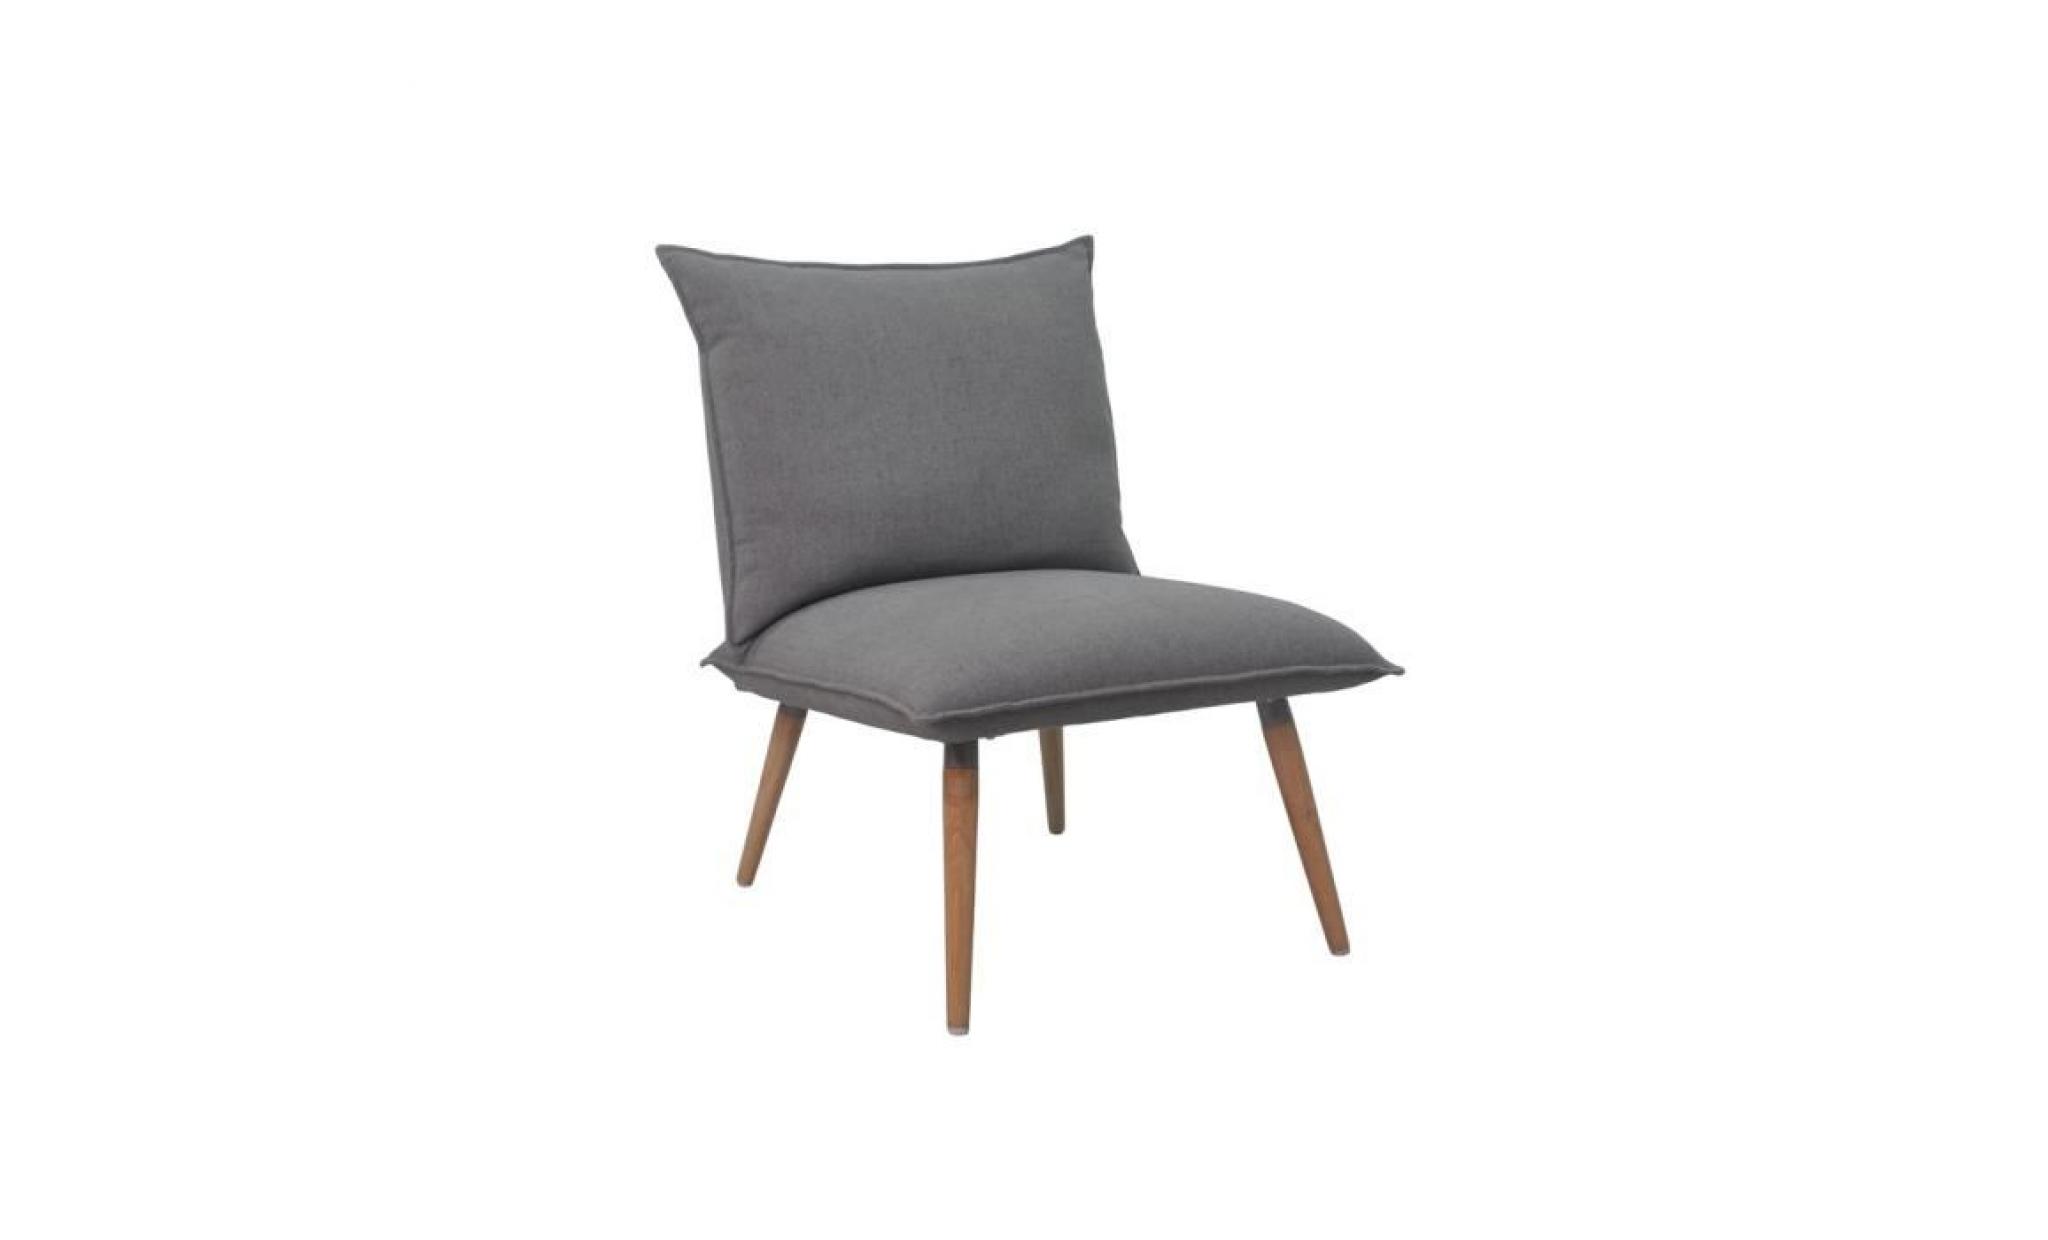 phil fauteuil en bois massif   tissu polyester   style vintage   l 64 x p 81 cm